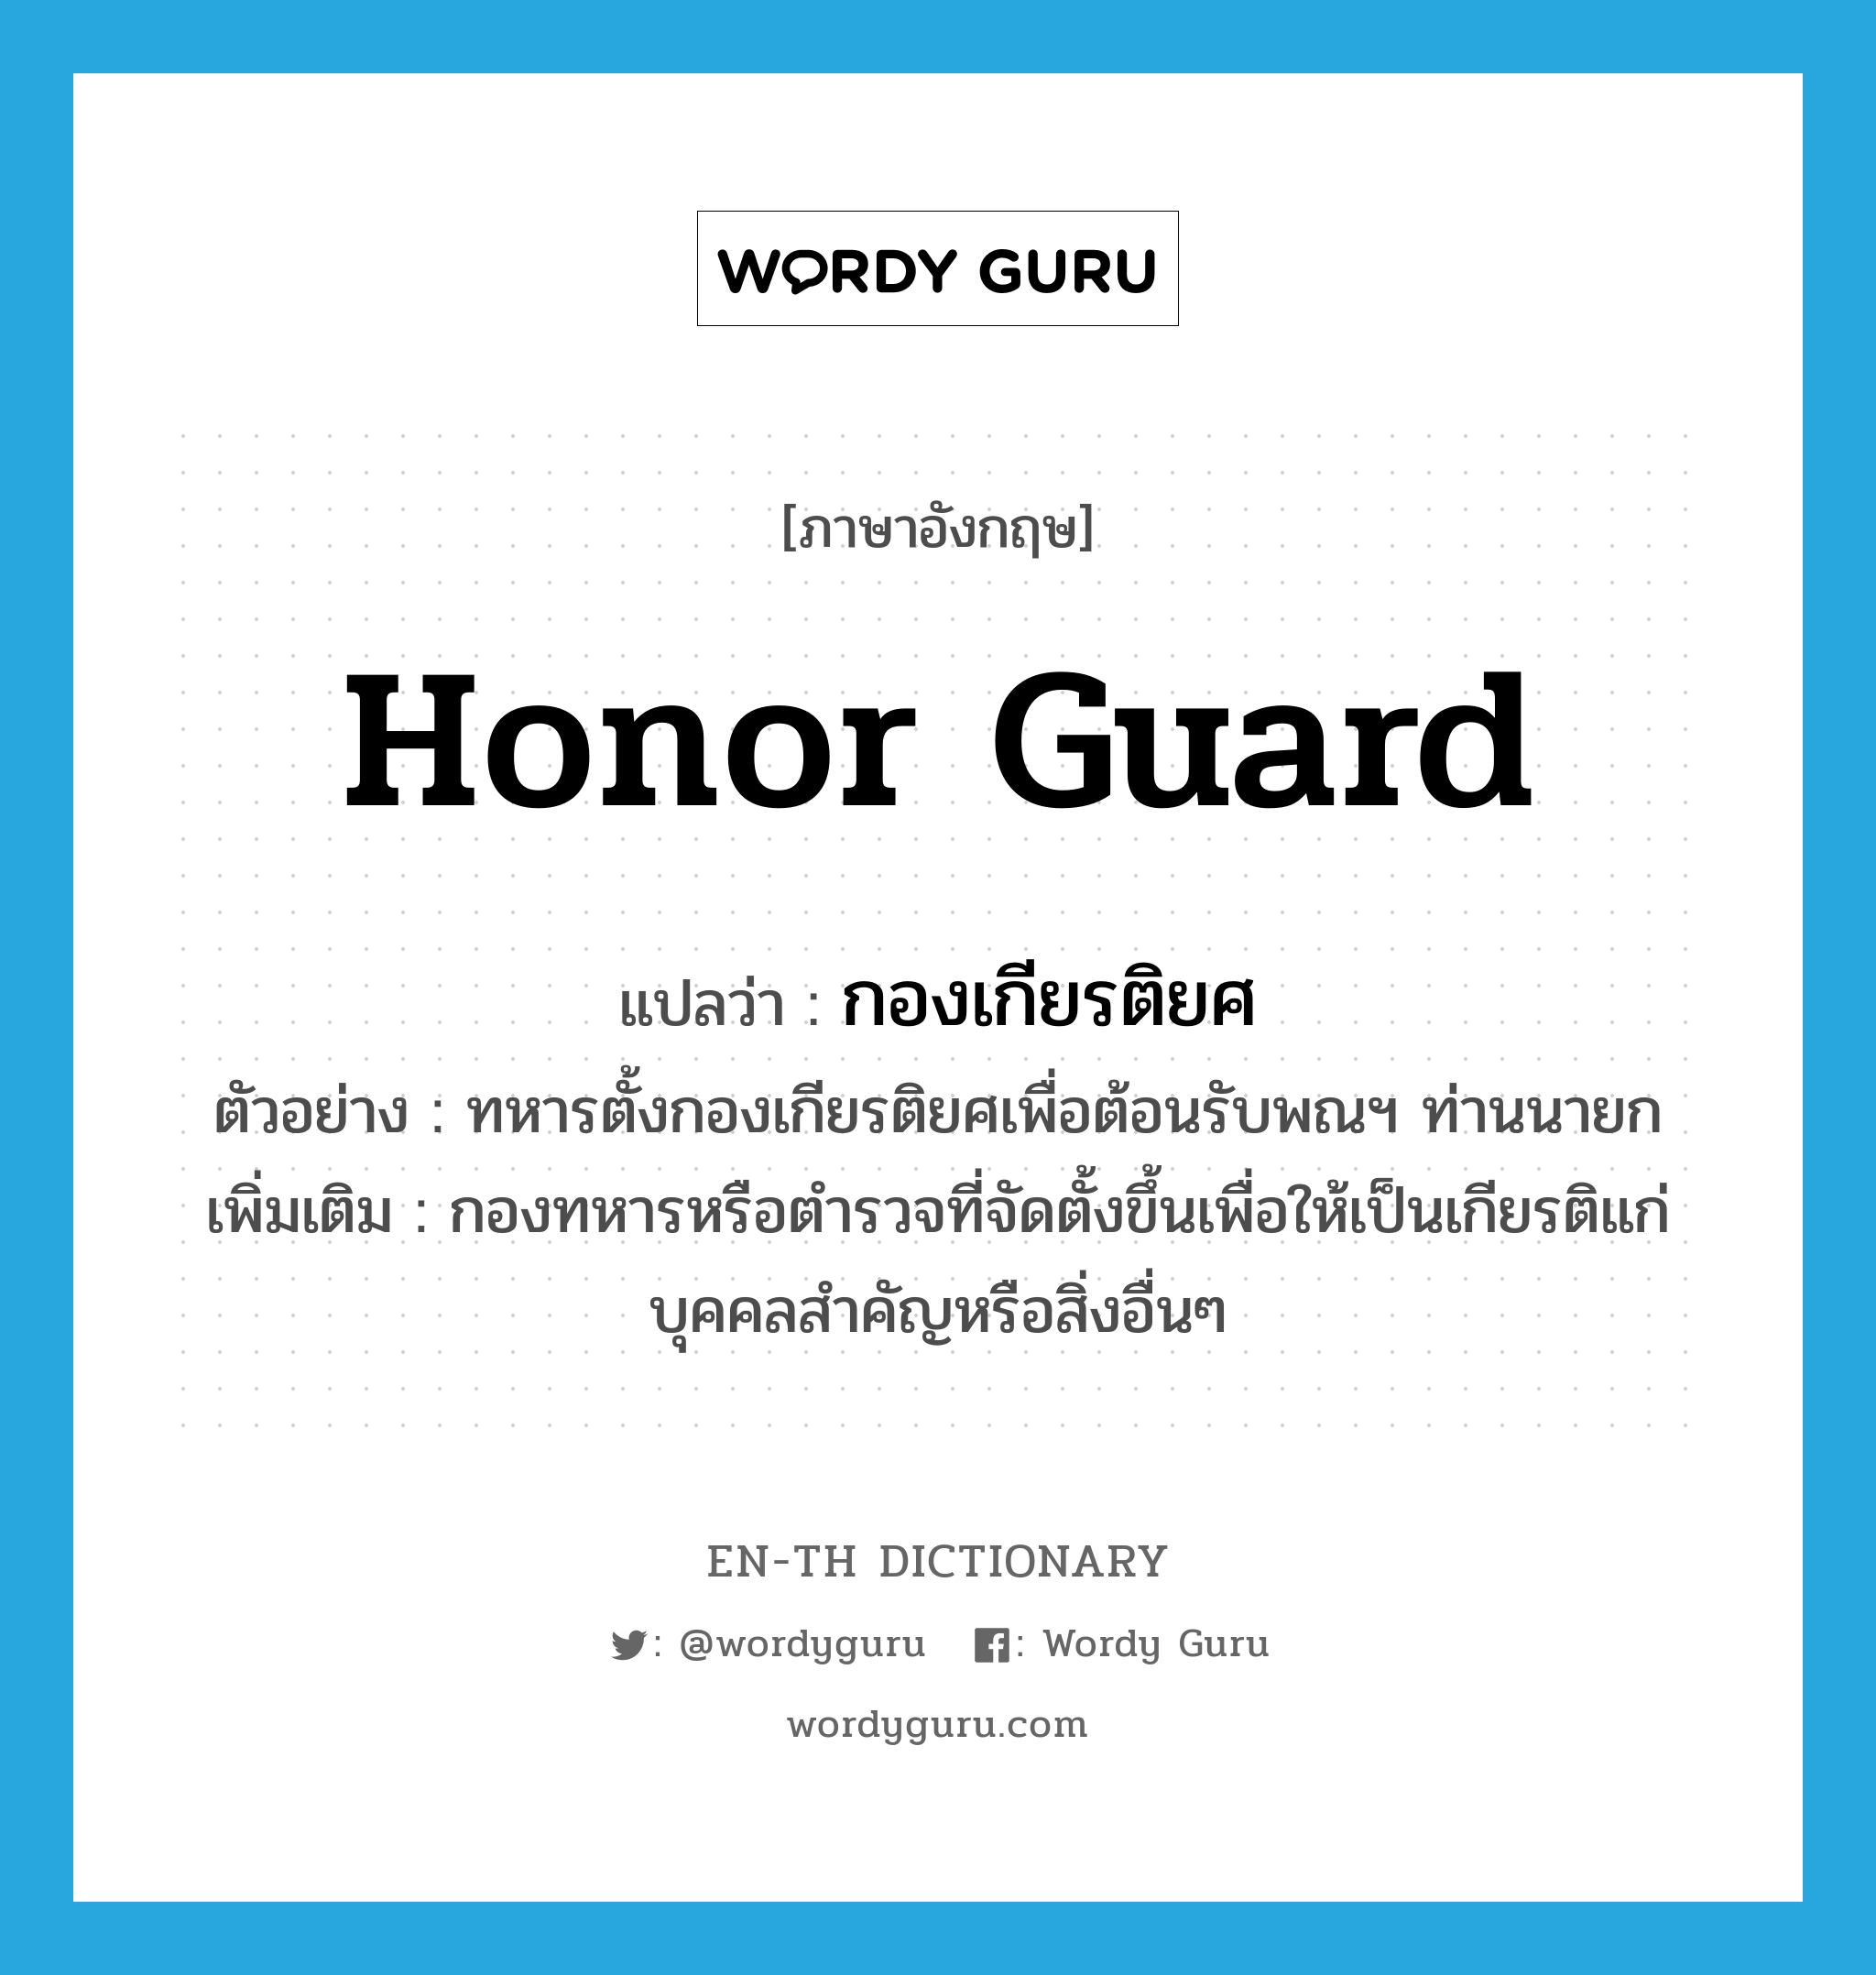 honor guard แปลว่า?, คำศัพท์ภาษาอังกฤษ honor guard แปลว่า กองเกียรติยศ ประเภท N ตัวอย่าง ทหารตั้งกองเกียรติยศเพื่อต้อนรับพณฯ ท่านนายก เพิ่มเติม กองทหารหรือตำรวจที่จัดตั้งขึ้นเพื่อให้เป็นเกียรติแก่บุคคลสำคัญหรือสิ่งอื่นๆ หมวด N